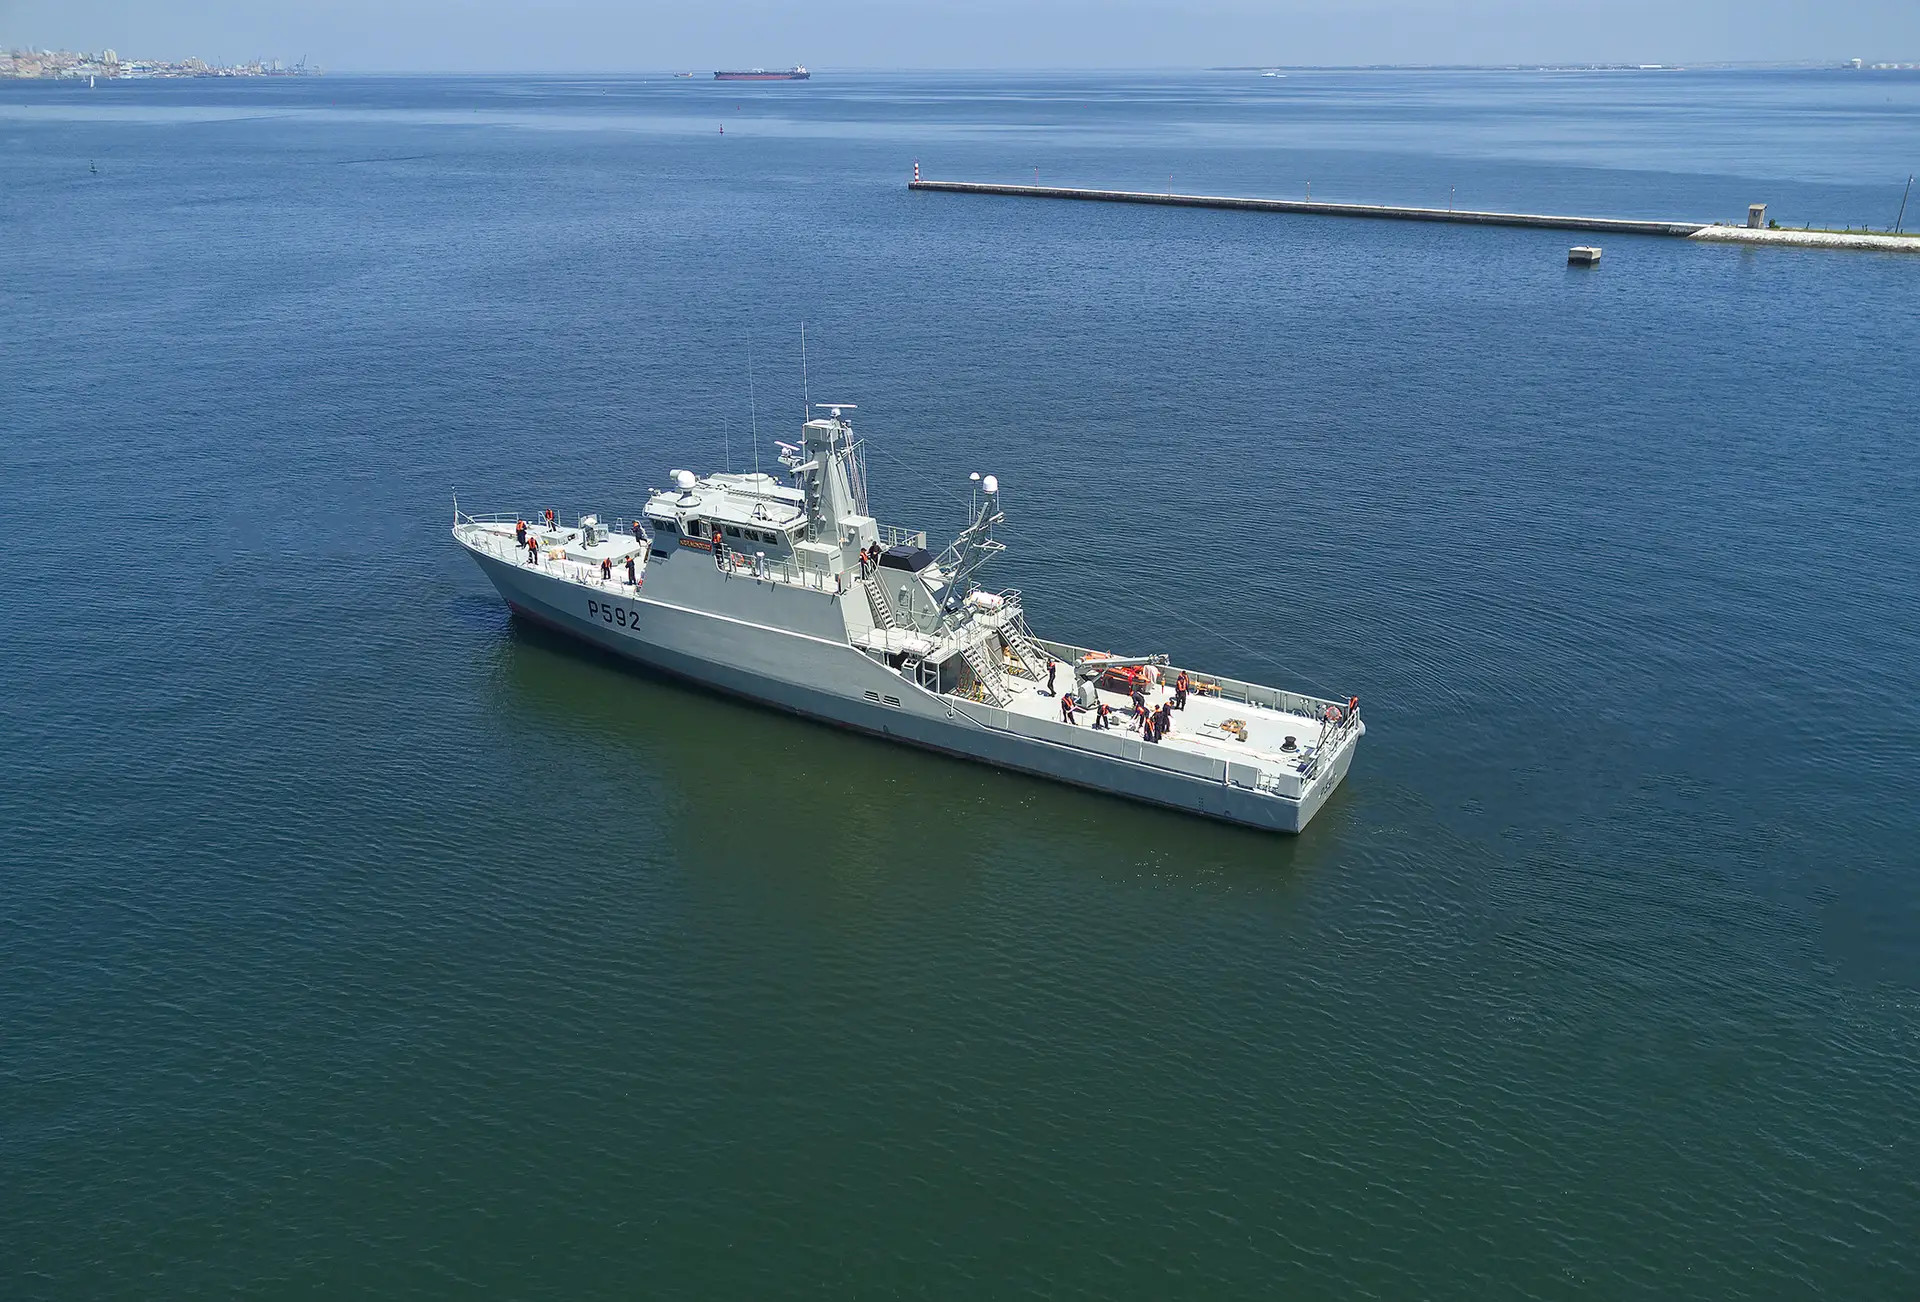 Navio de patrulha oceânica "Mondego" da Marinha portuguesa